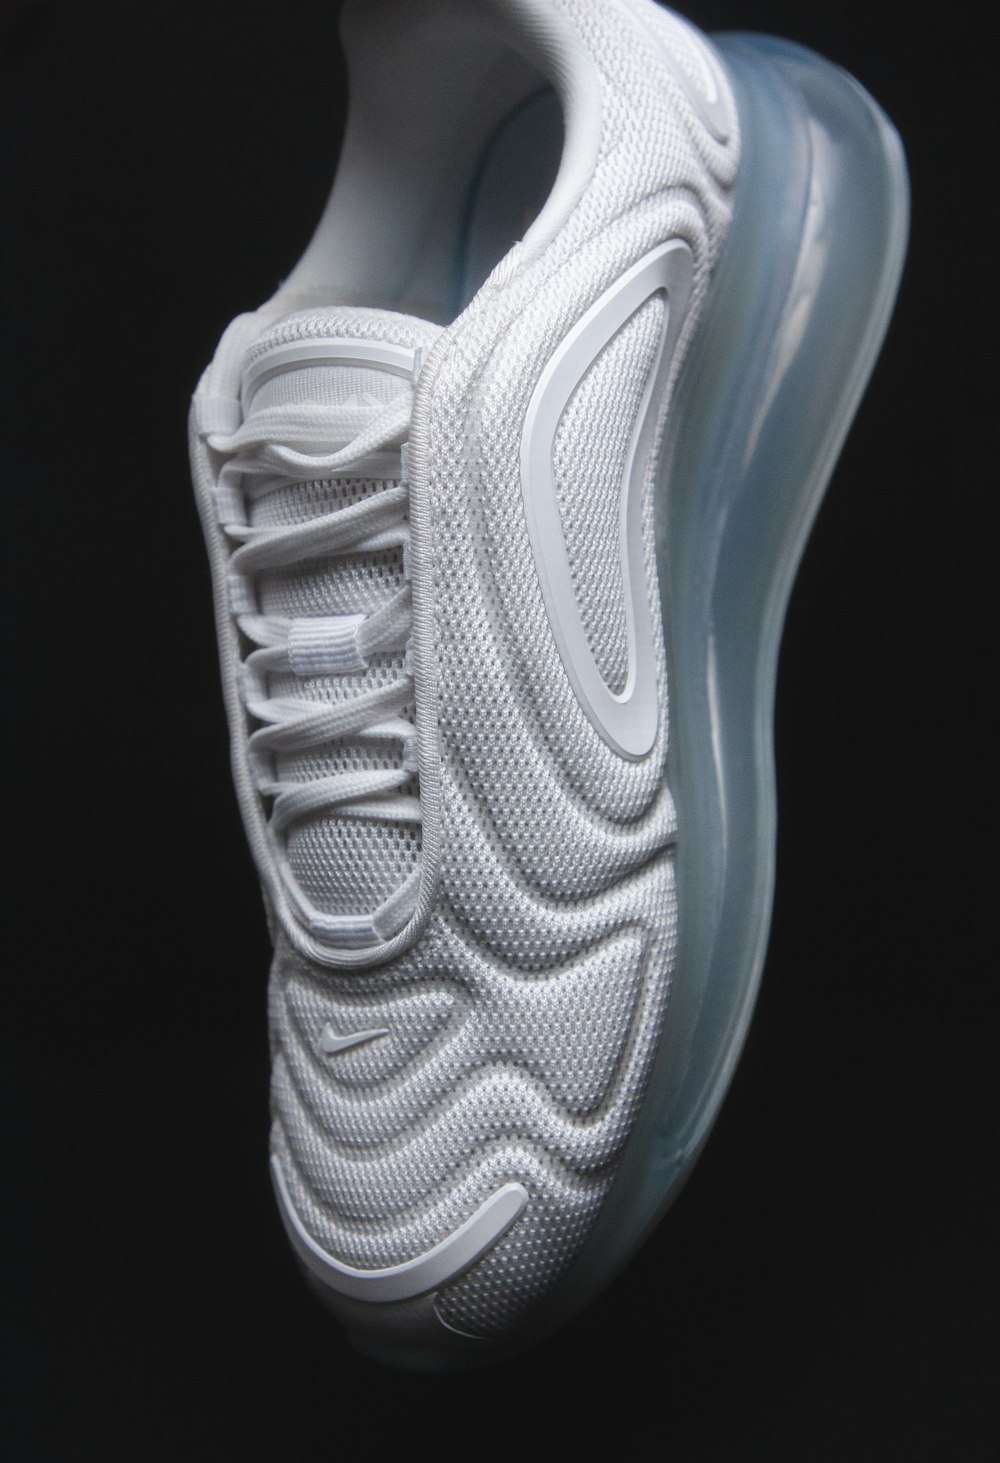 Chaussure de sport Nike blanche et noire